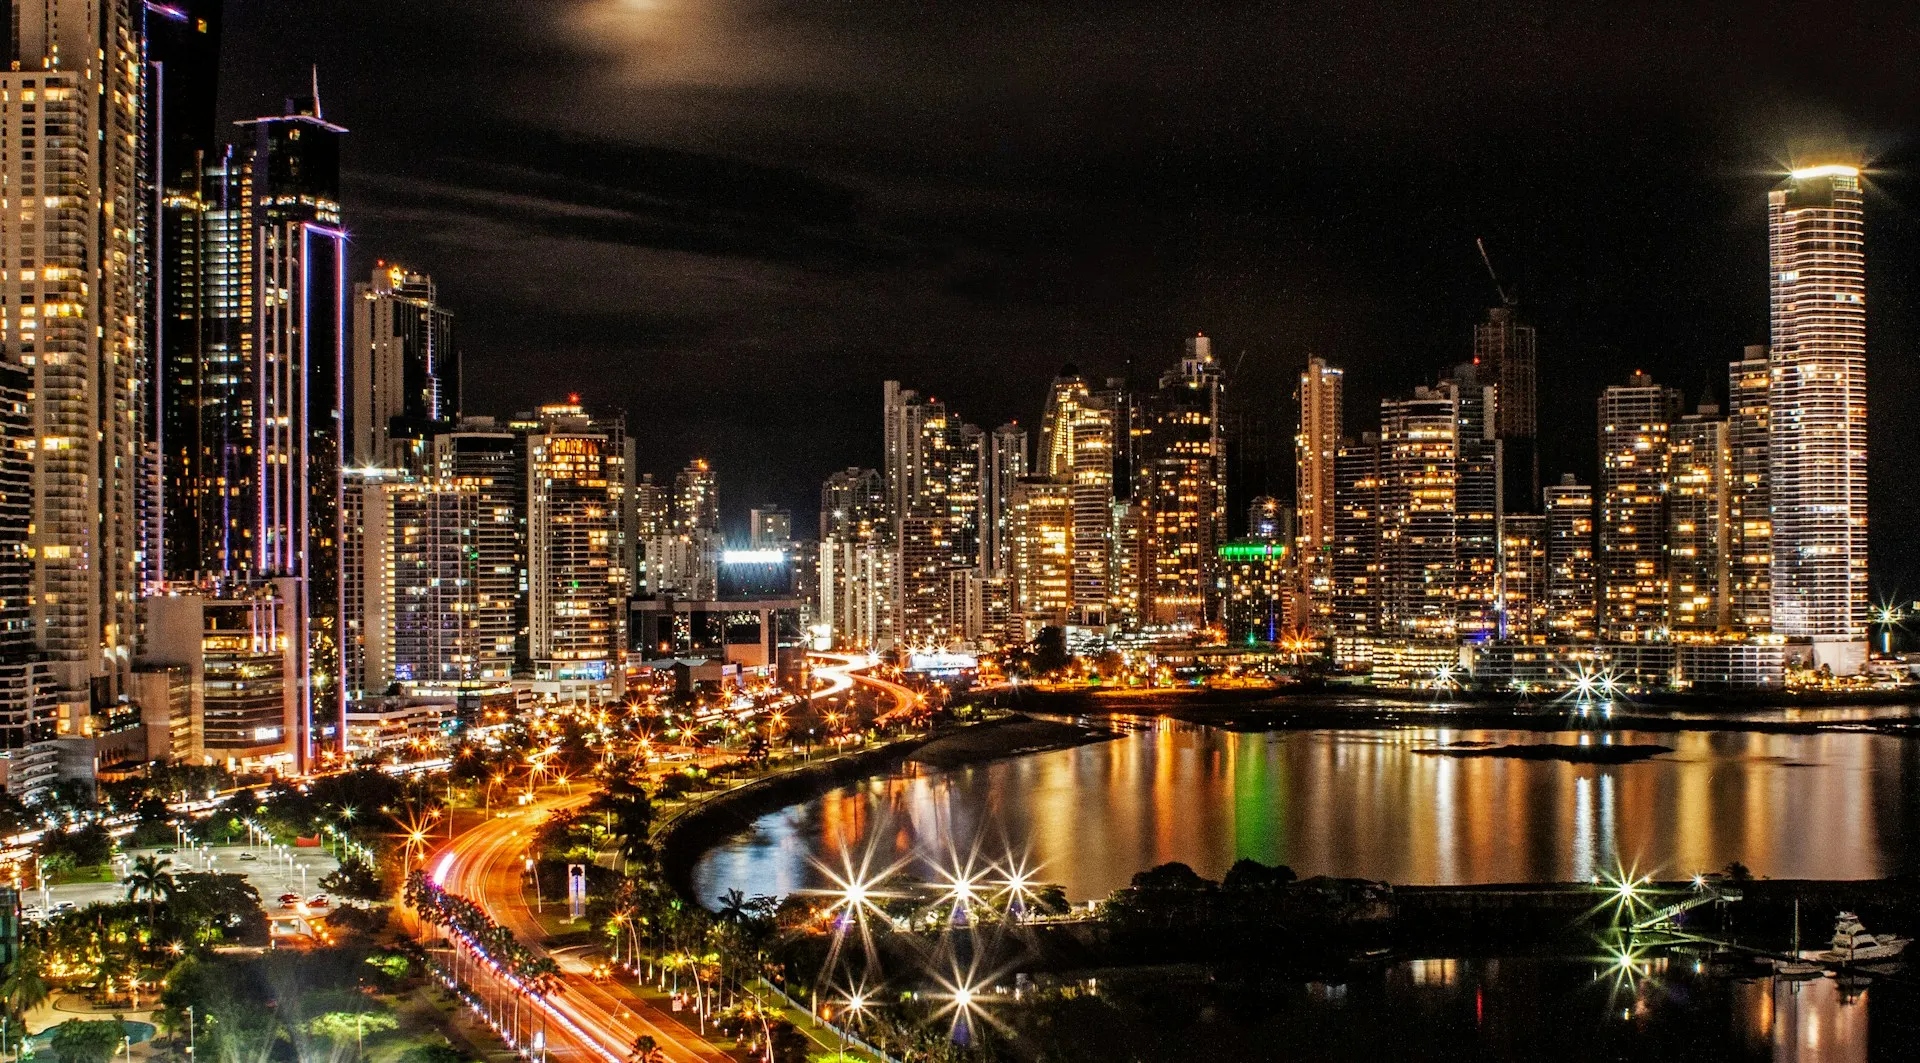 Cityscape of Panama City. Source: Photo by Yosi Bitran on Unsplash